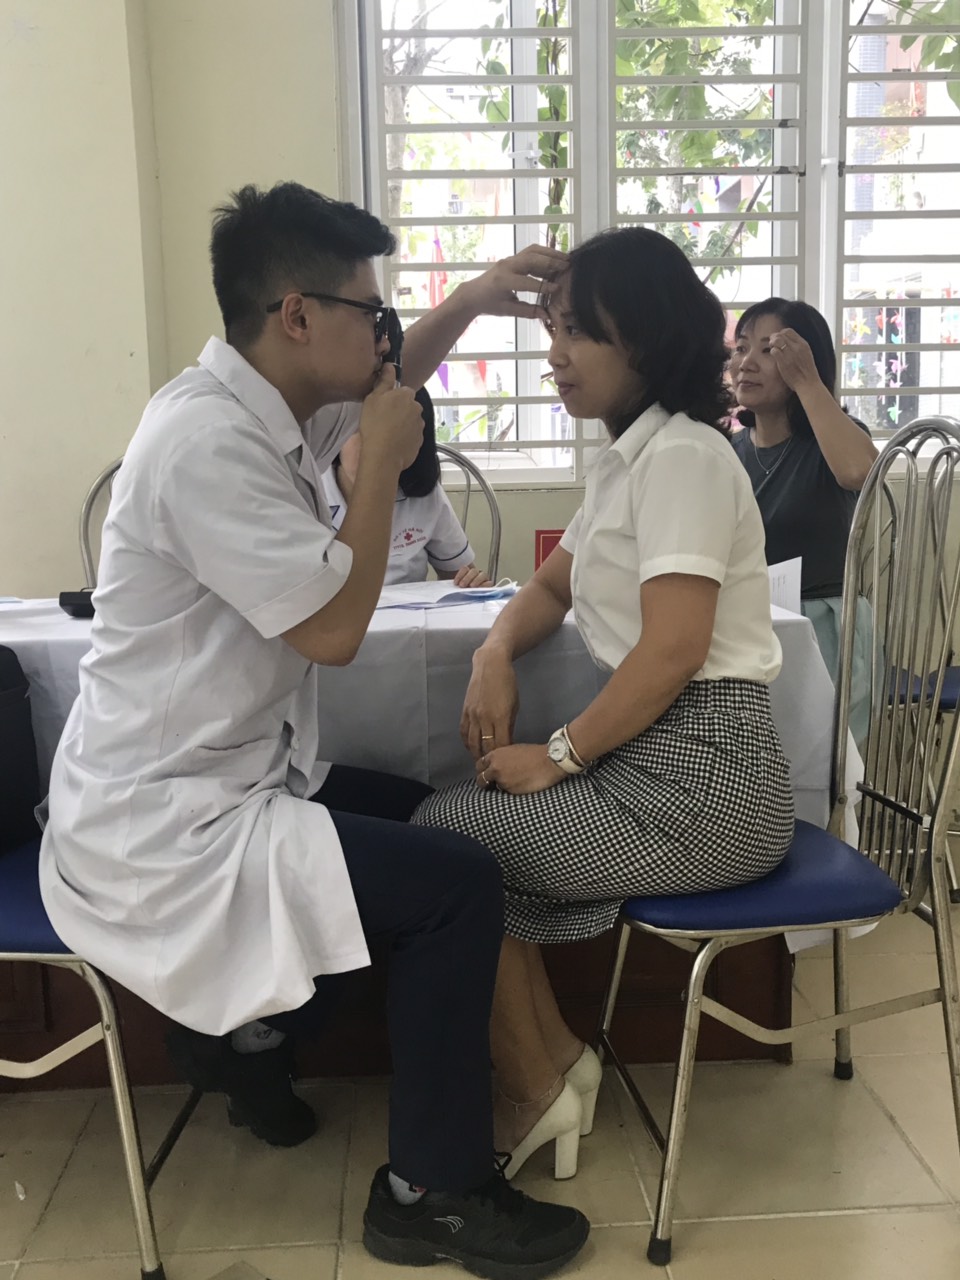 Khám sức khoẻ cho các giáo viên, nhân viên của các trường học tại 2 phường Hạ Đình và Thanh Xuân Trung